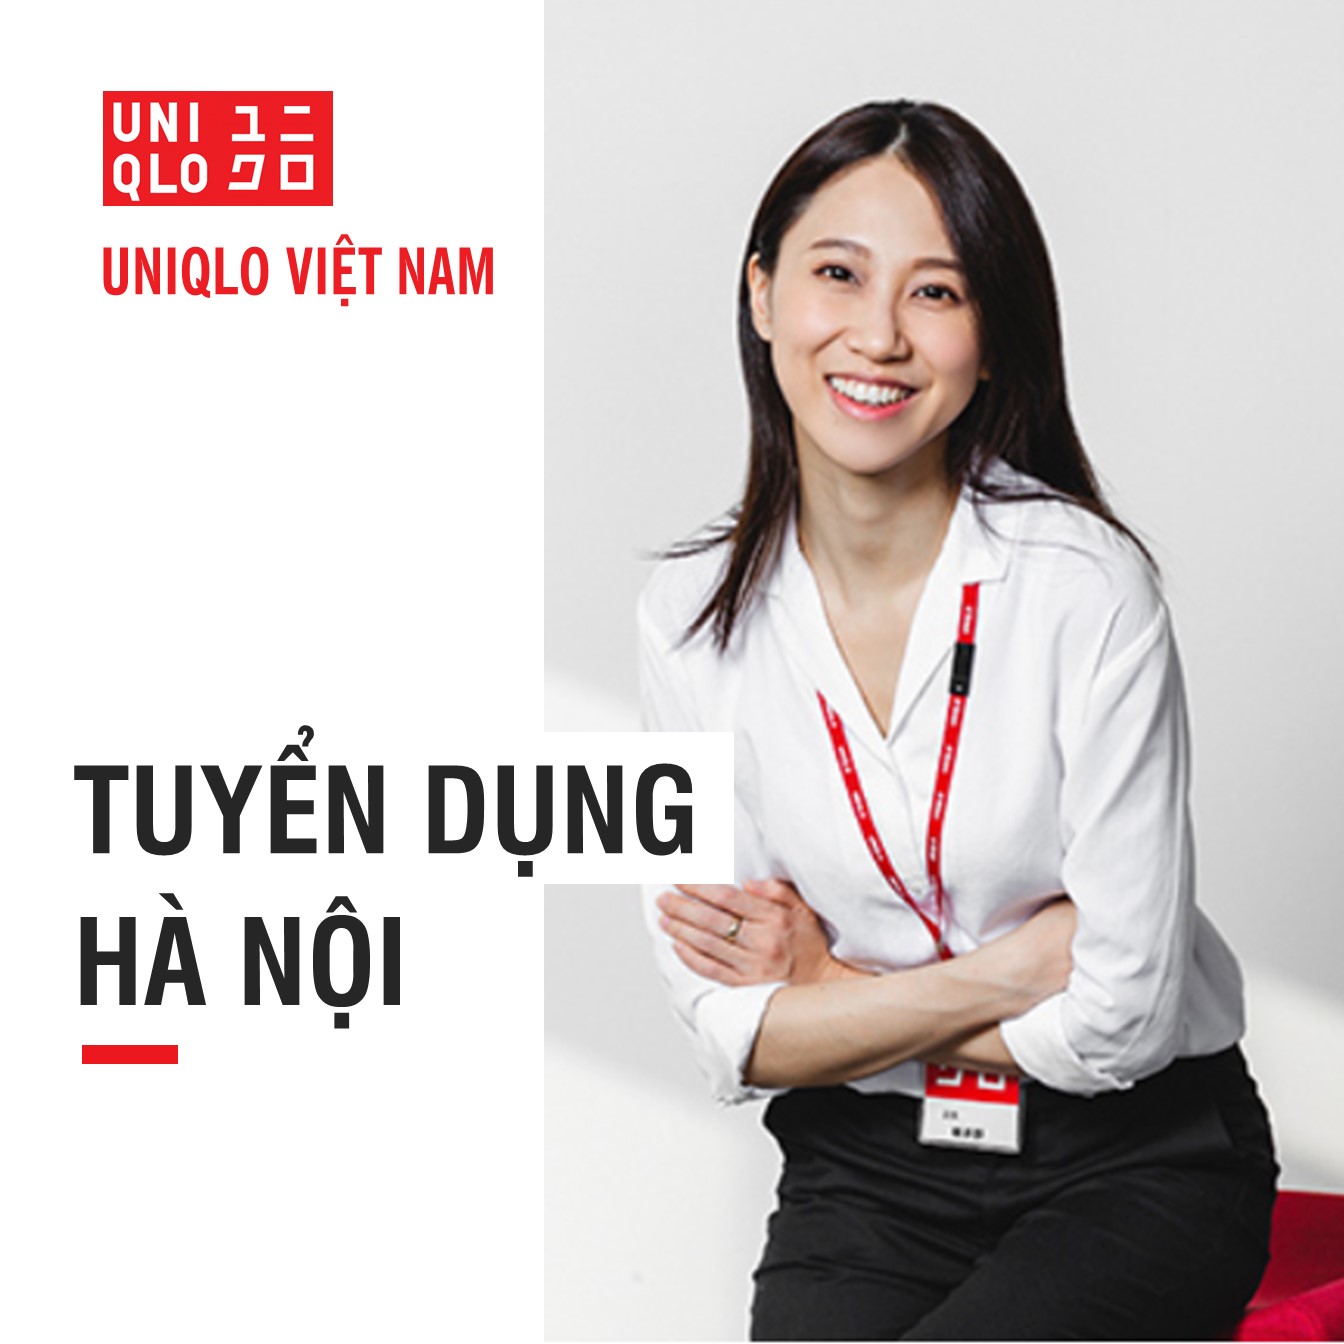 Uniqlo Vietnam  CƠ HỘI TRỞ THÀNH NHÂN VIÊN CỬA HÀNG TẠI  Facebook